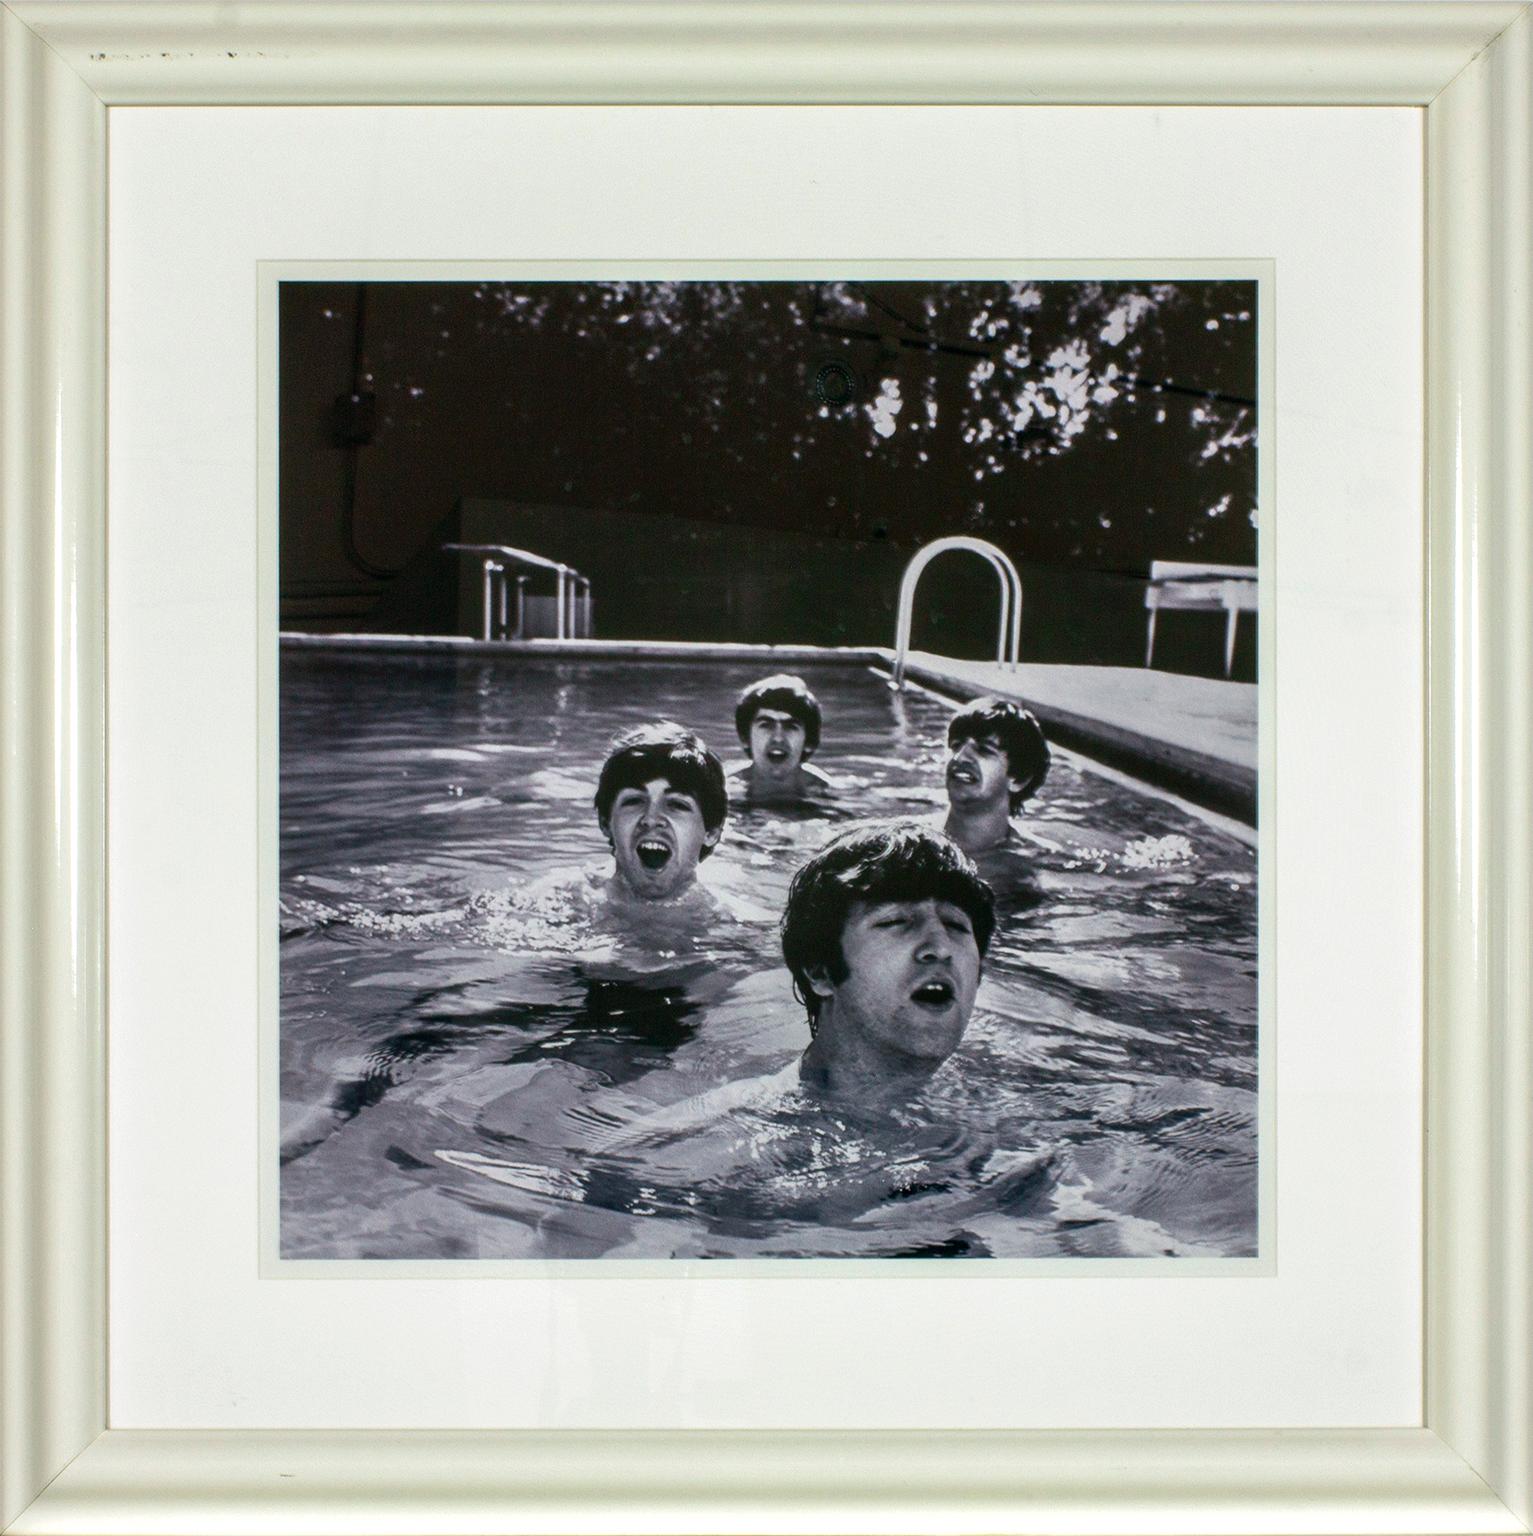 "The Beatles, Miami Beach, 1964", del fotógrafo John Loengard, muestra a Paul McCartney, George Harrison, Ringo Starr y John Lennon en la piscina del hotel Deauville de Miami Beach, Florida, en febrero de 1964. Esta fotografía enmarcada se expuso